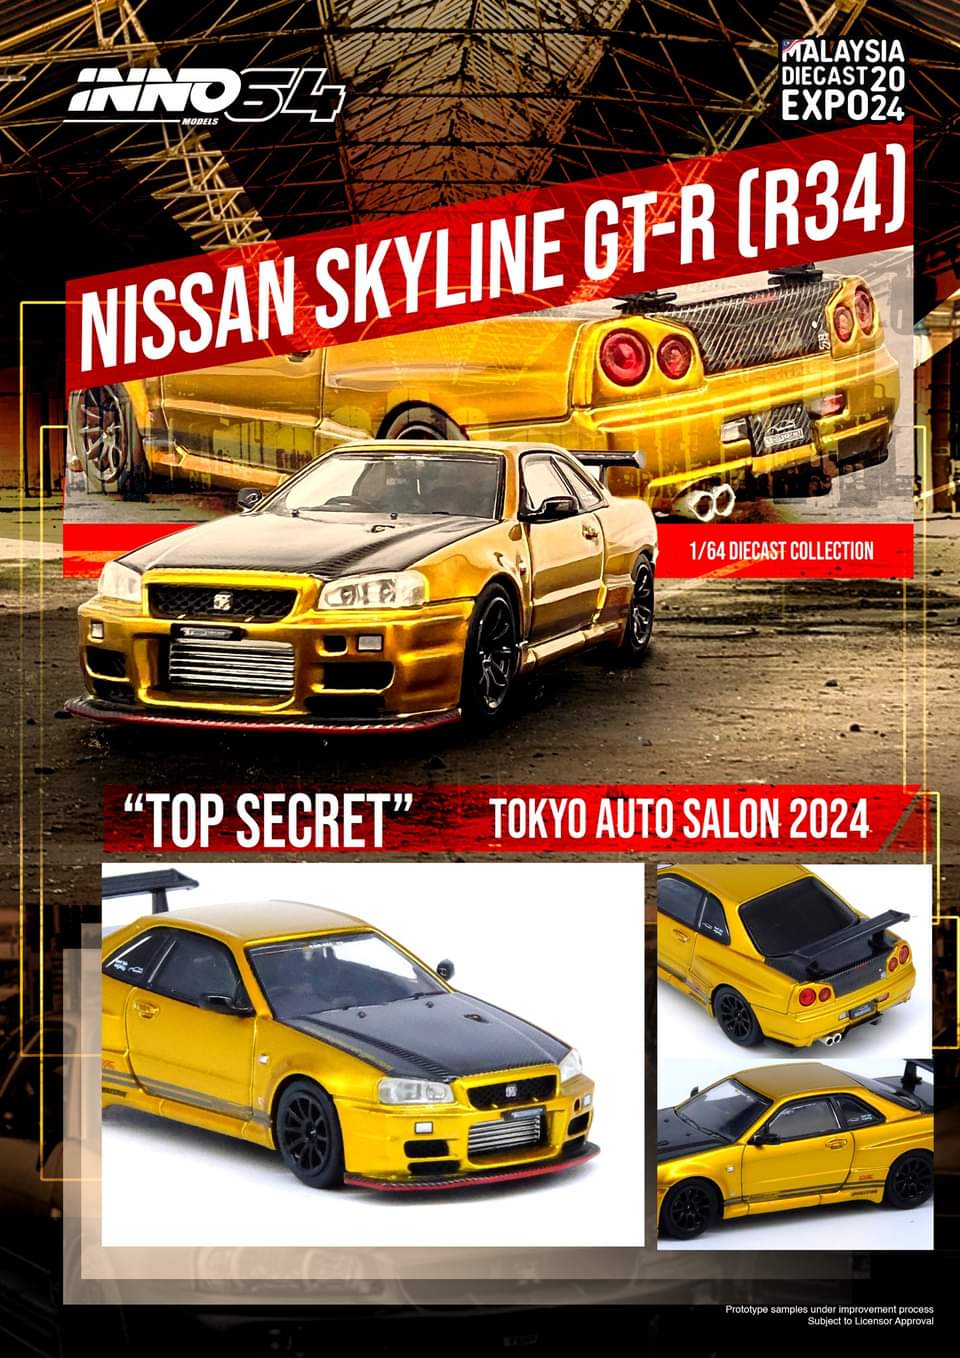 Inno64 Top Secret Nissan Skyline GT-R R34 Gold w/ carbon fibre 